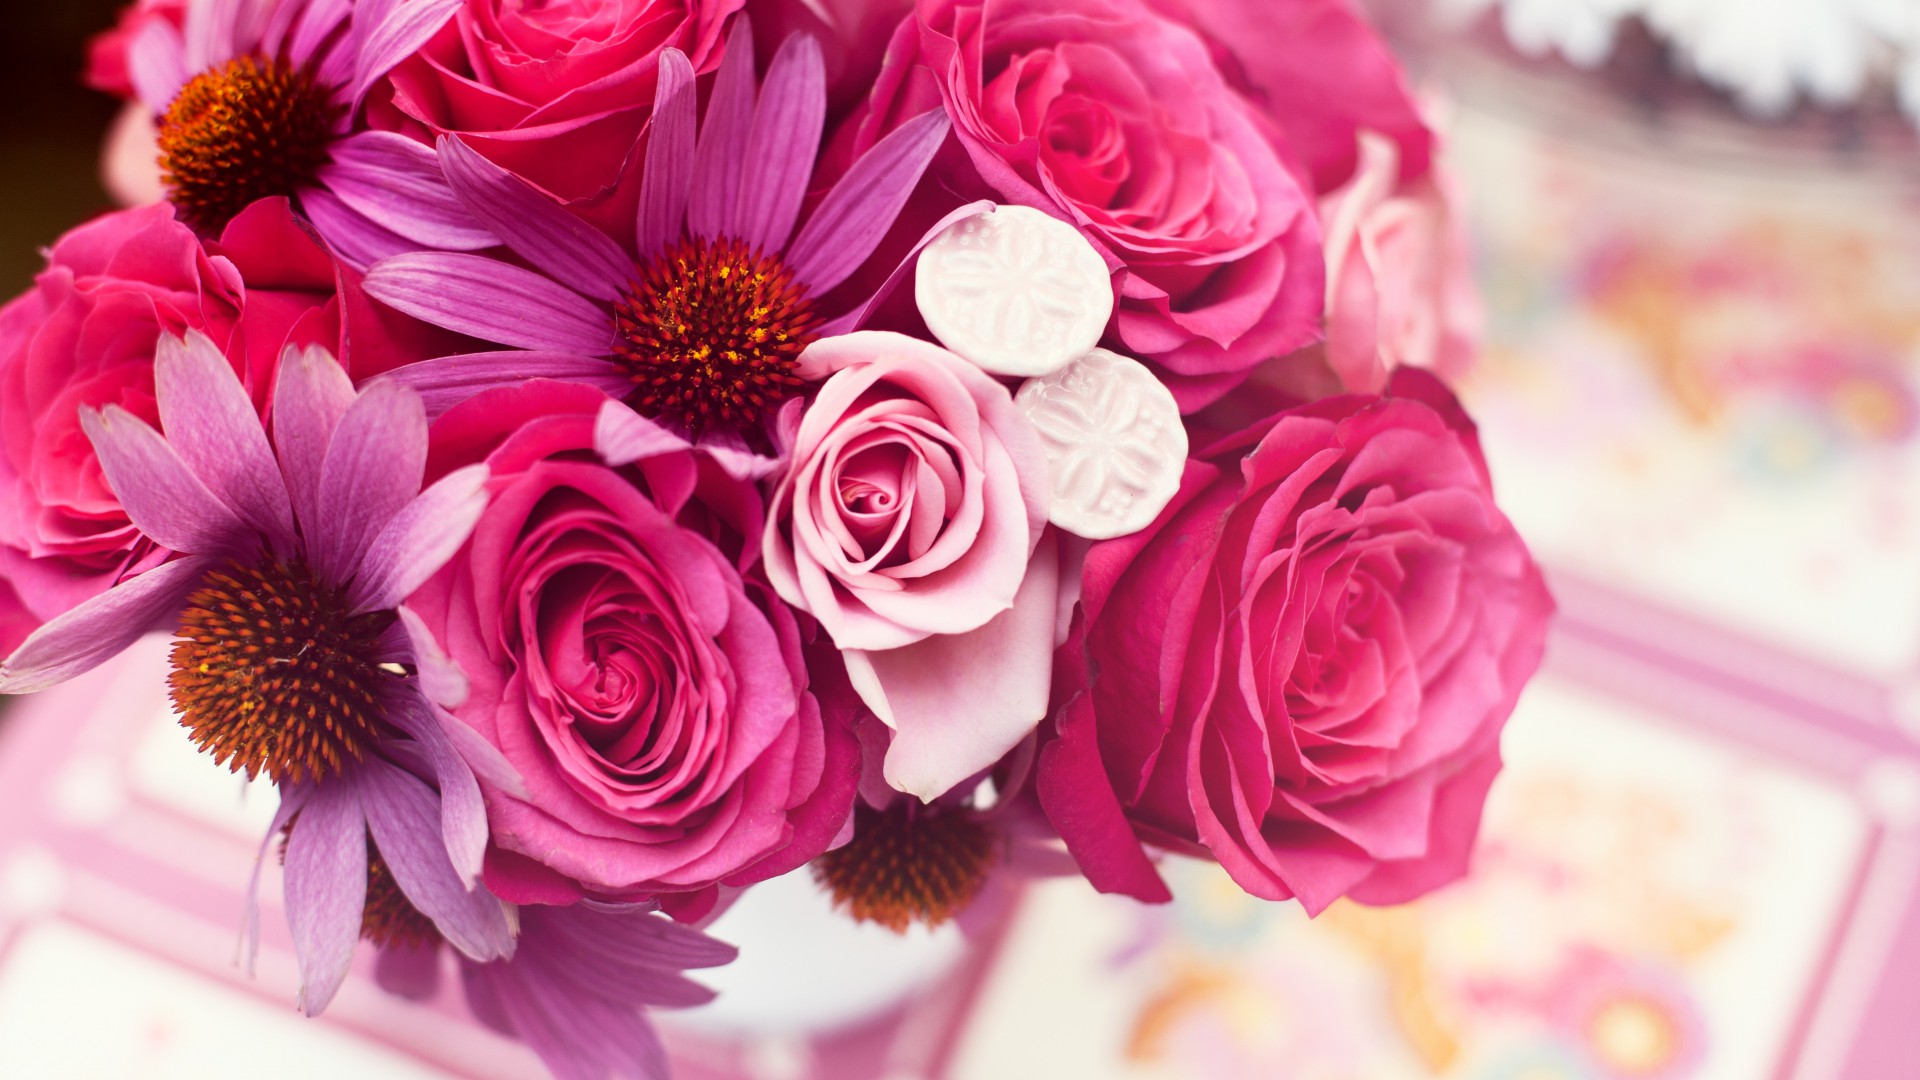 Garden roses, 4k, HD wallpaper, Flower bouquet, pink (horizontal)